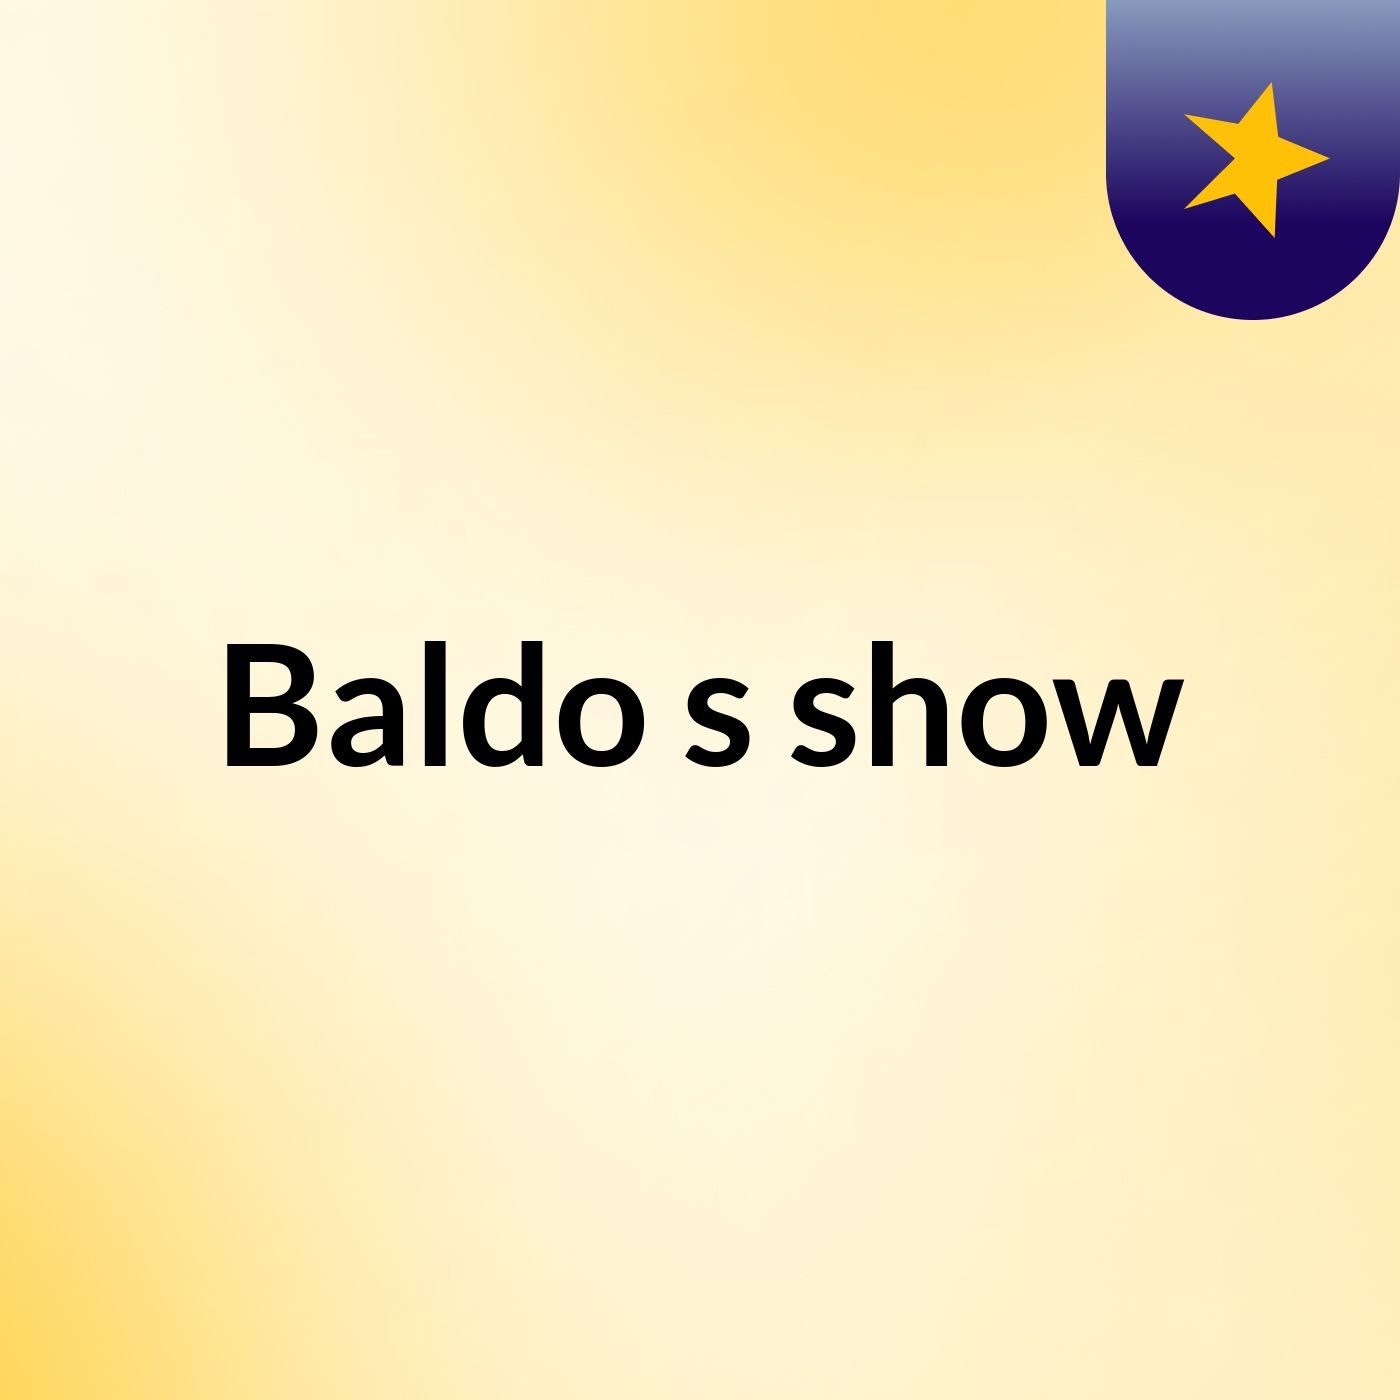 Baldo's show